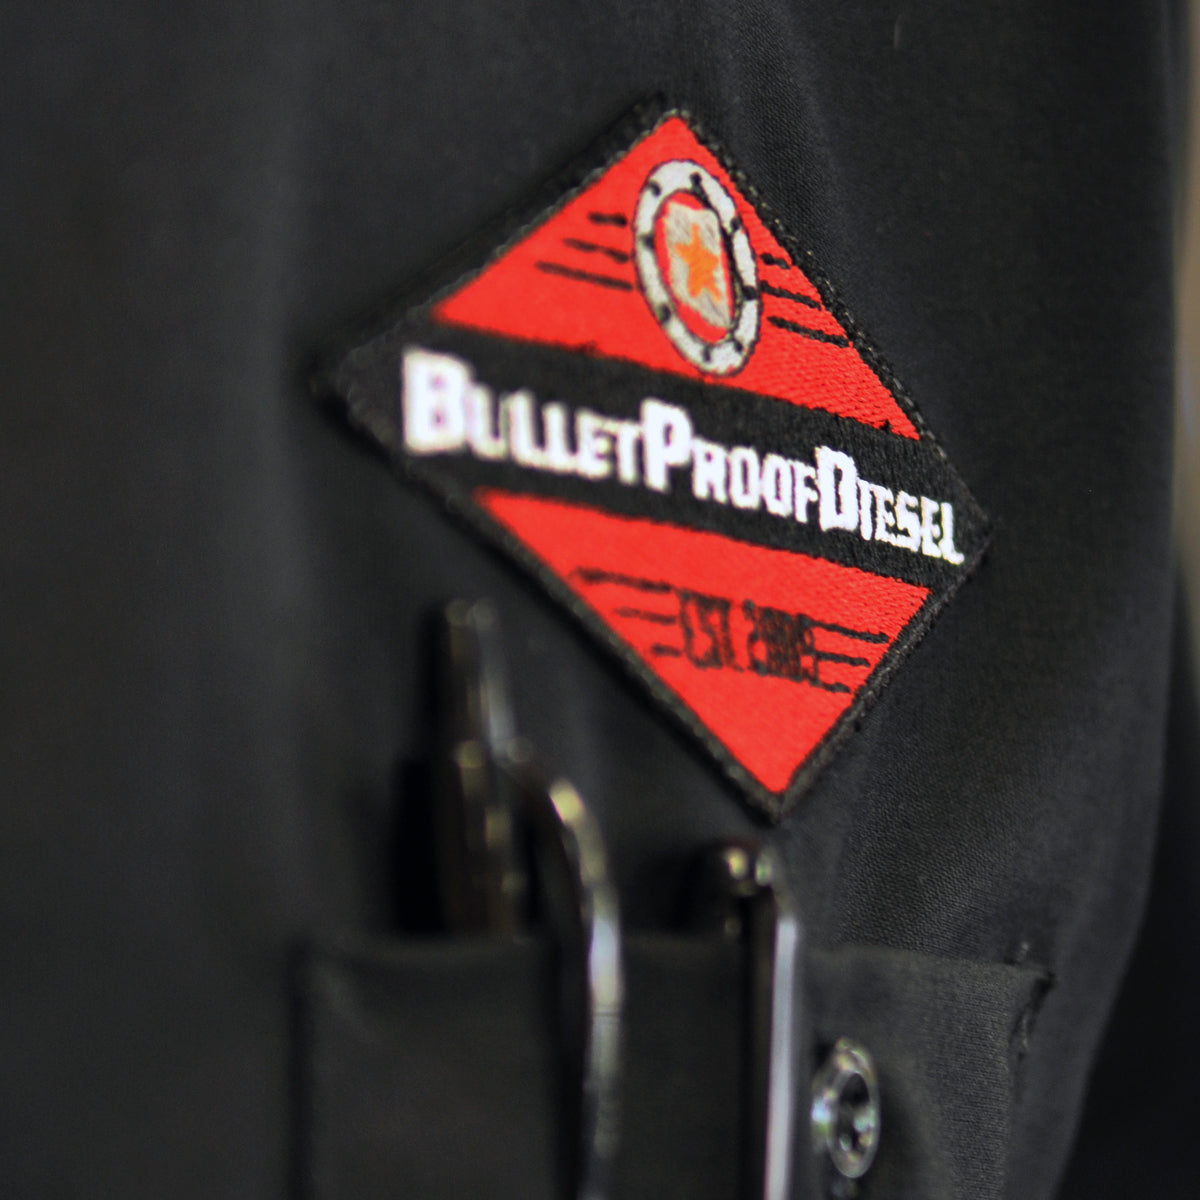 Bullet Proof Diesel Work Shirt - Red Kap, Black